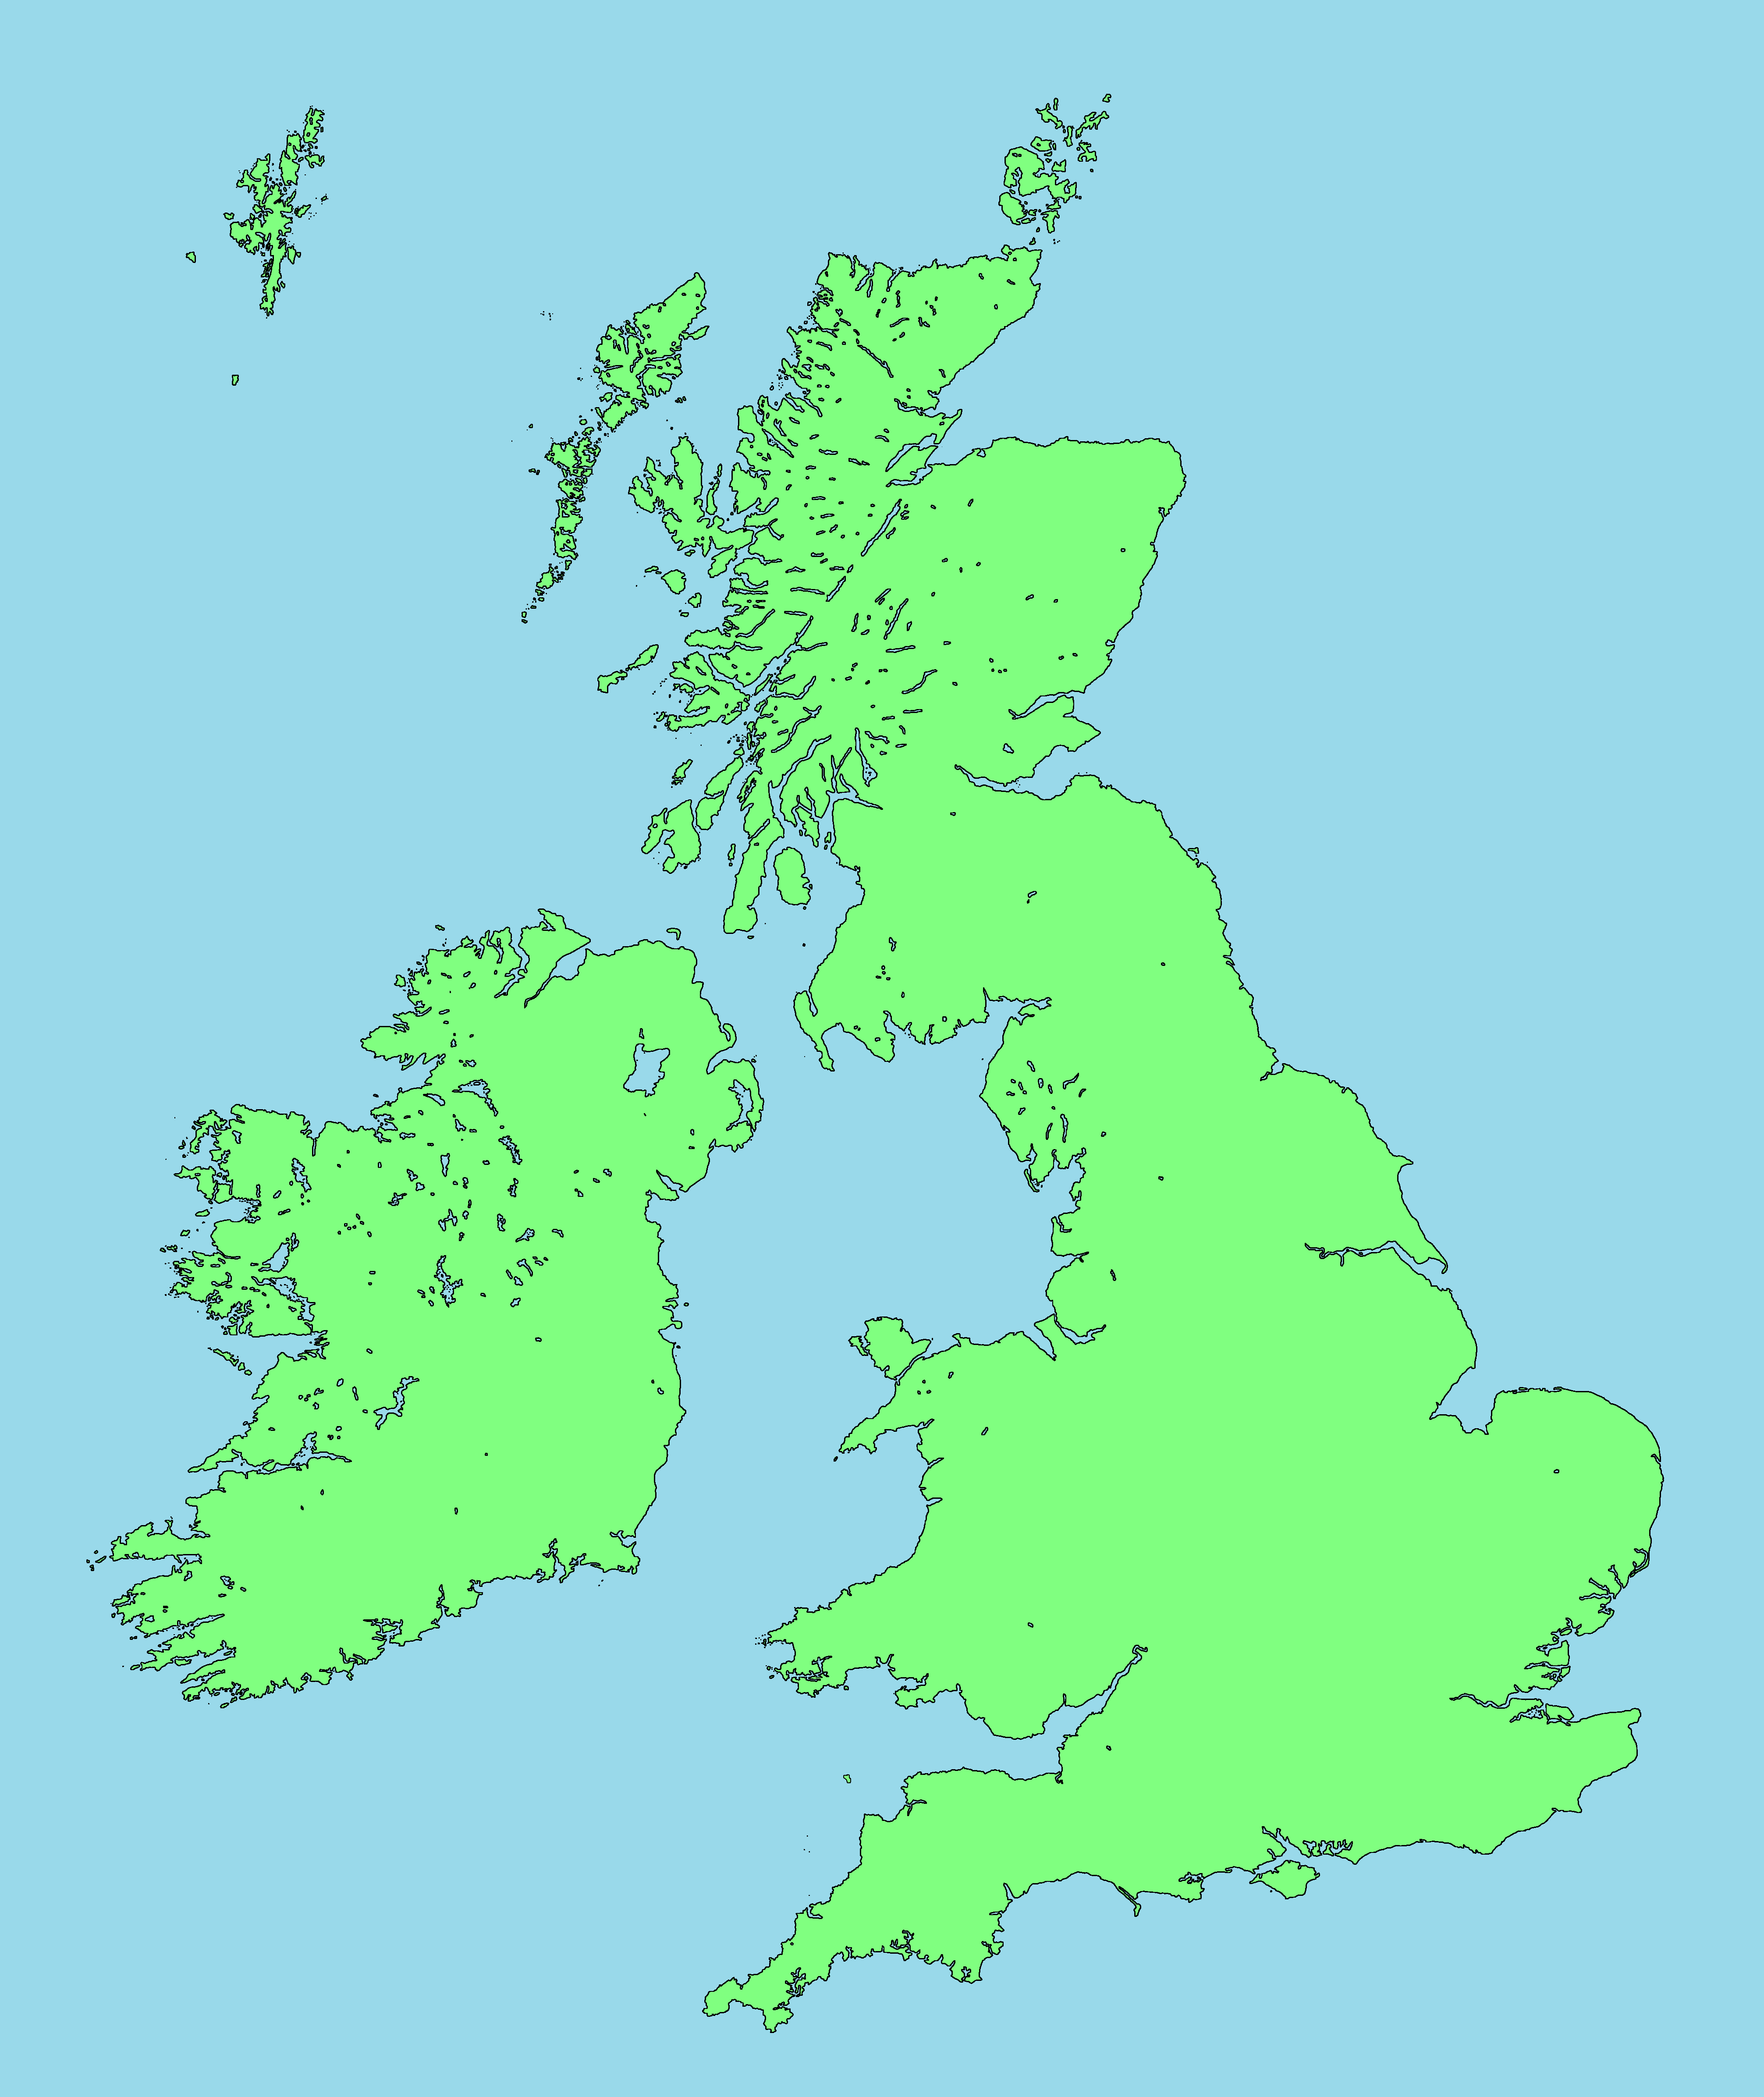 Great britain is an island. Остров Великобритания на карте. Остров Британия на карте. Карта Британии и британских островов. Острова Англии на карте.